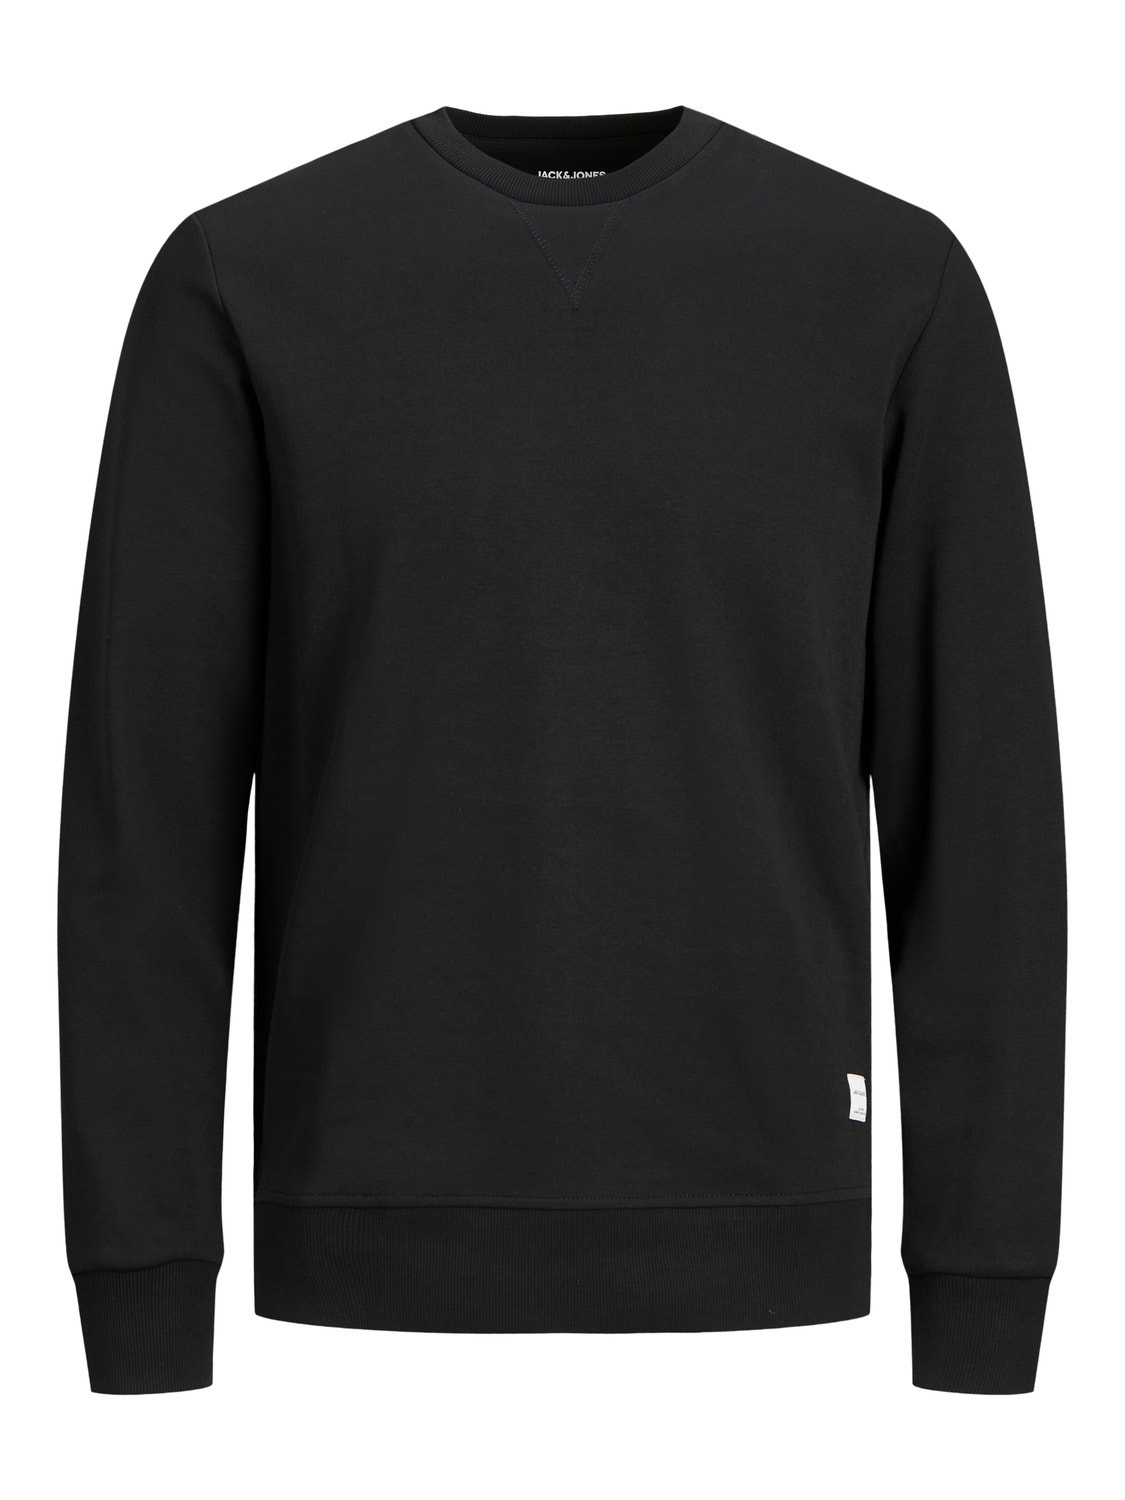 Jack & Jones Plain Crew neck Sweatshirt -Black - 12181903